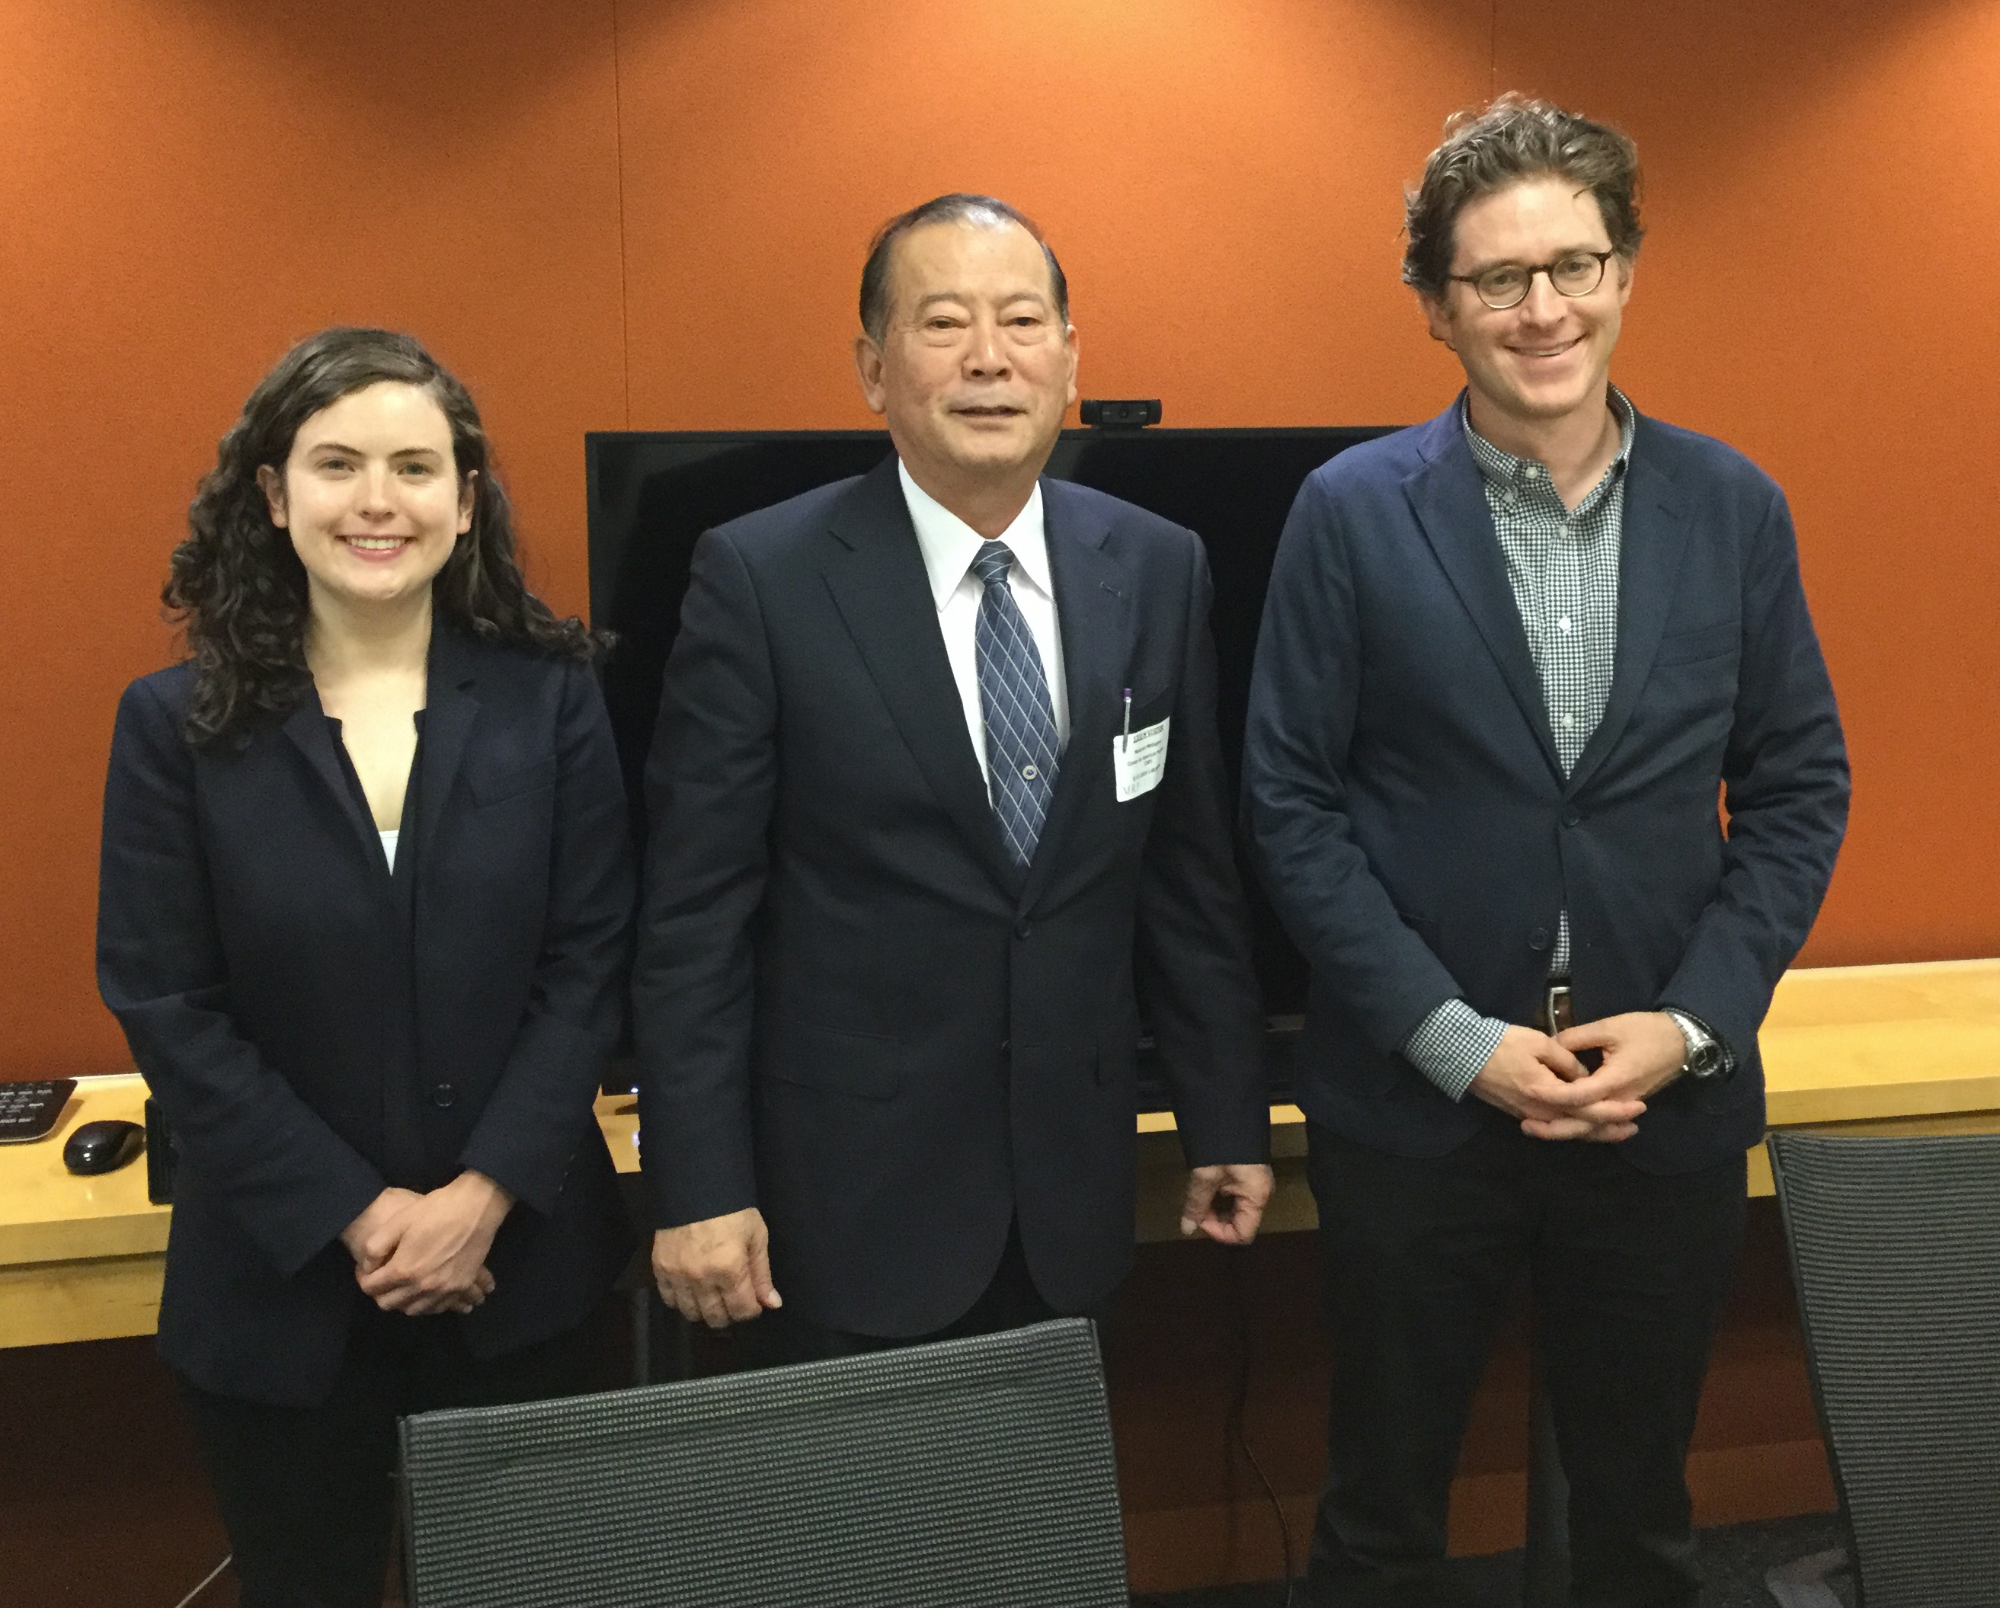 日本人の男性を挟んで左側にアジア政策研究員の女性、右側に上級研究員の男性が一列に立っている写真